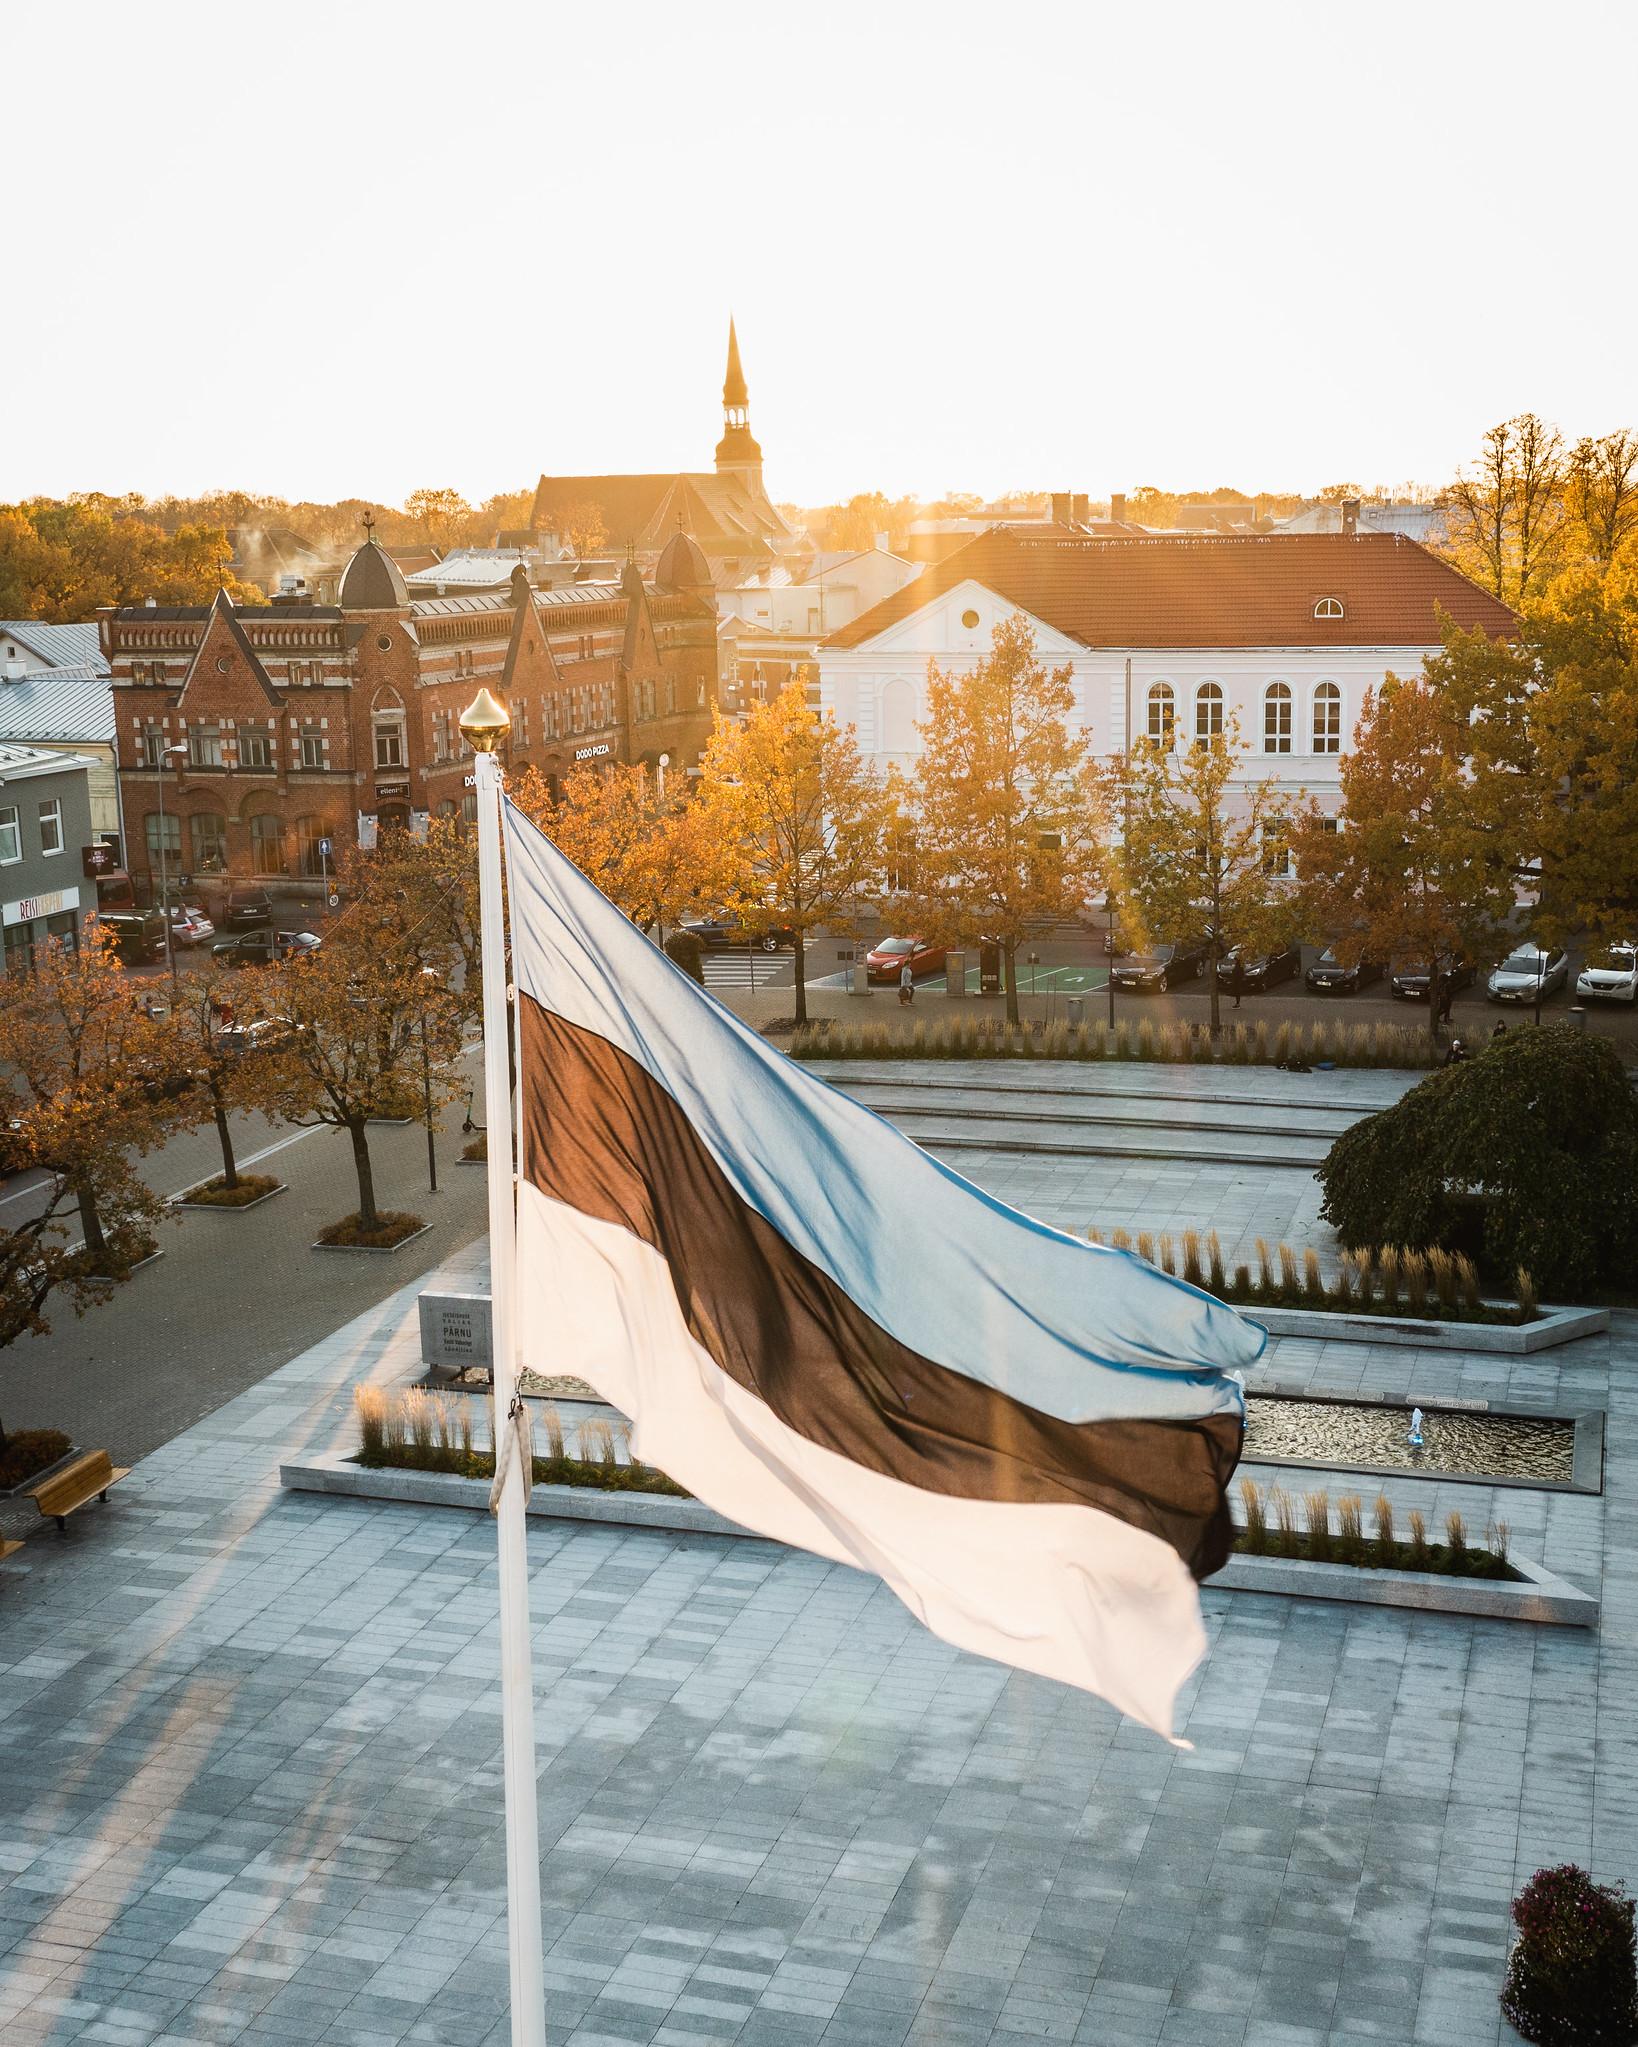 Eesti Vabariigi iseseisvuse väljakuulutamise mälestusmärk